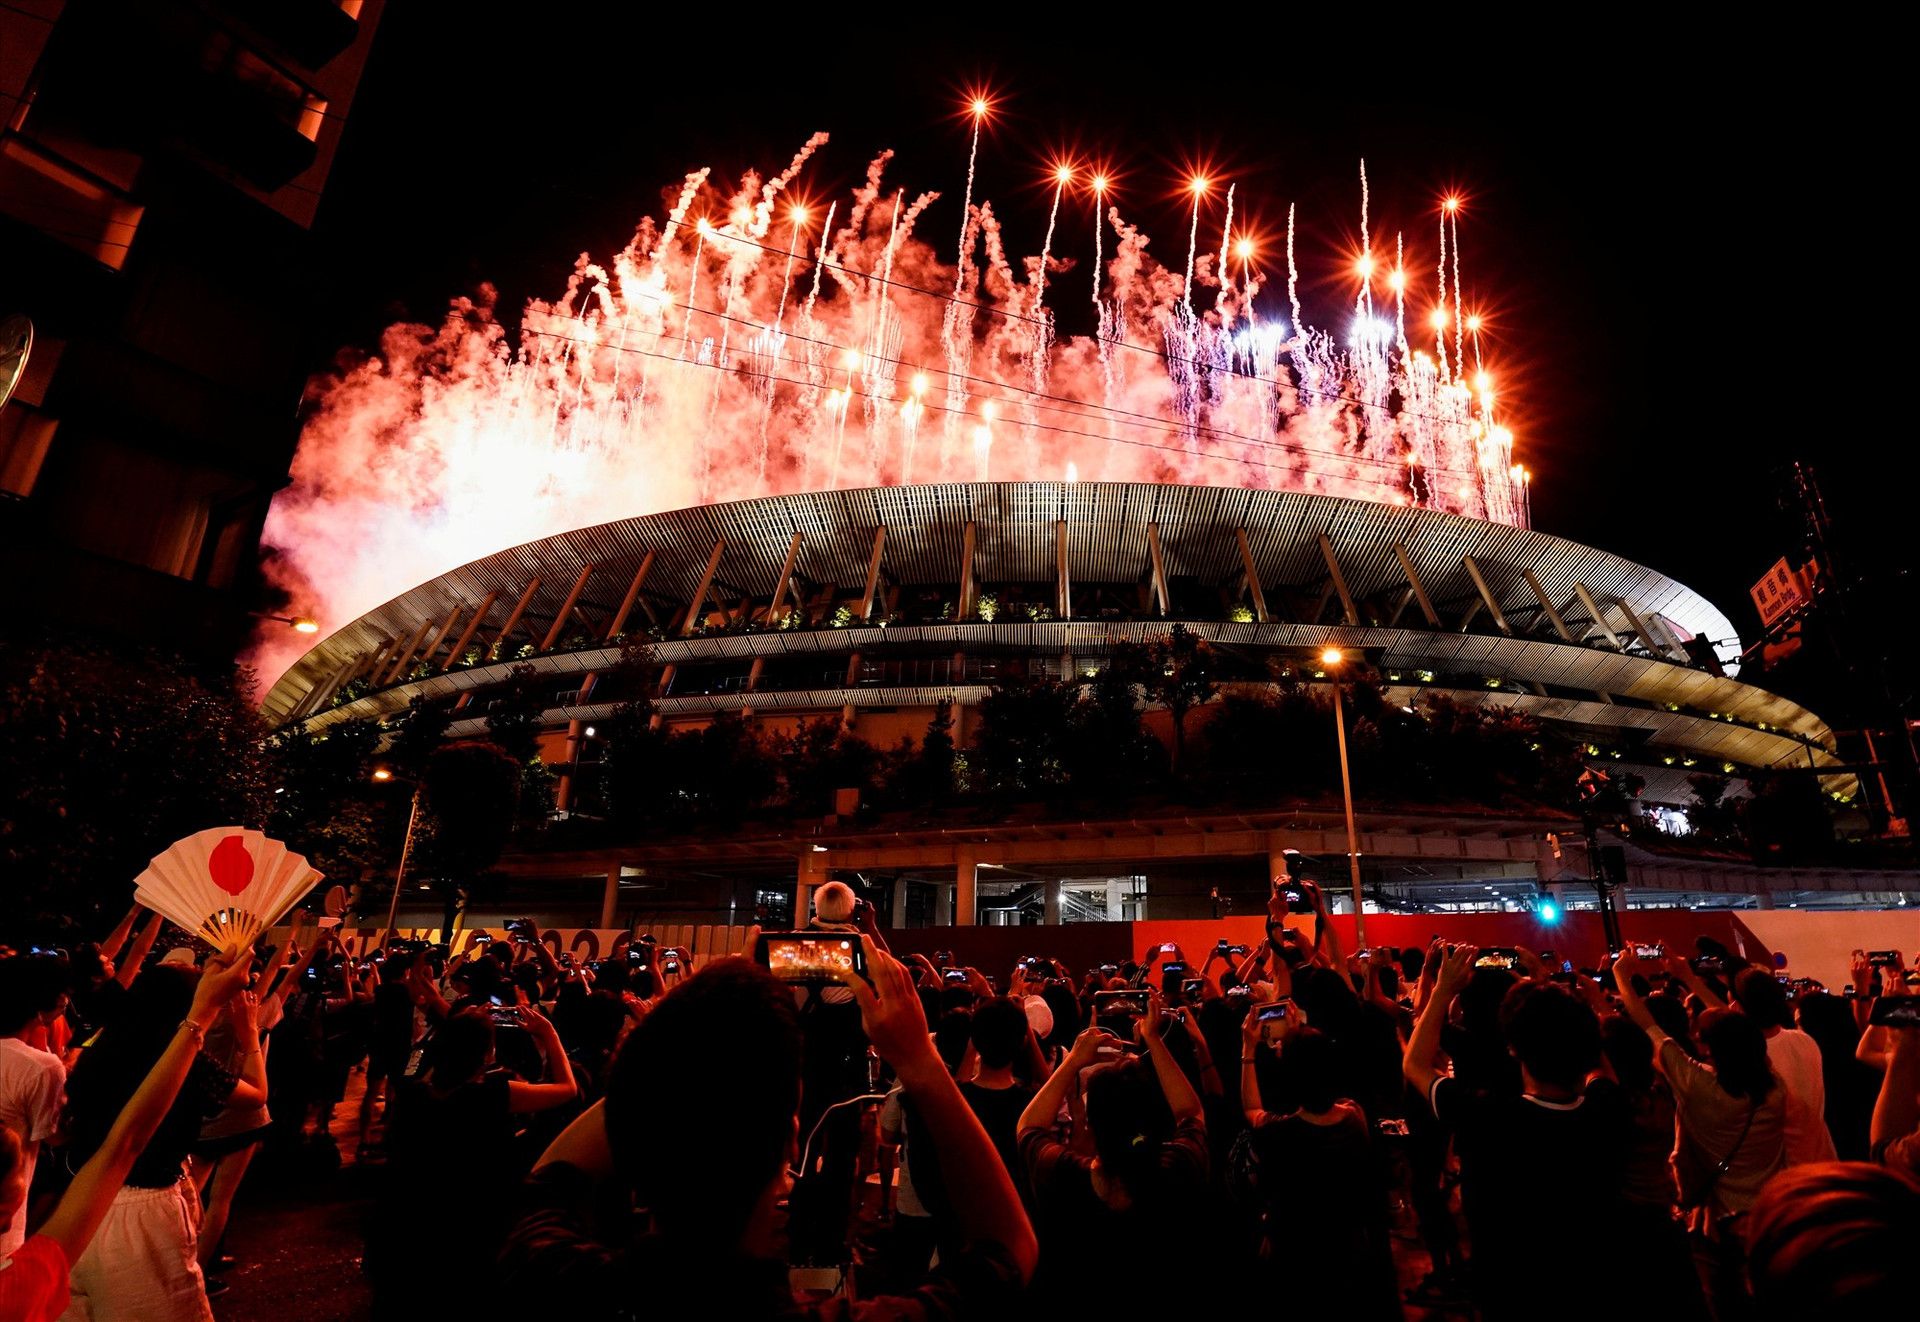 Không được vào sân để trực tiếp theo dõi buổi lễ khai mạc, nhiều người vẫn háo hức ghi lại những hình ảnh ngoạn mục ngay từ bên ngoài sân vận động Olympic. Ảnh: Reuters